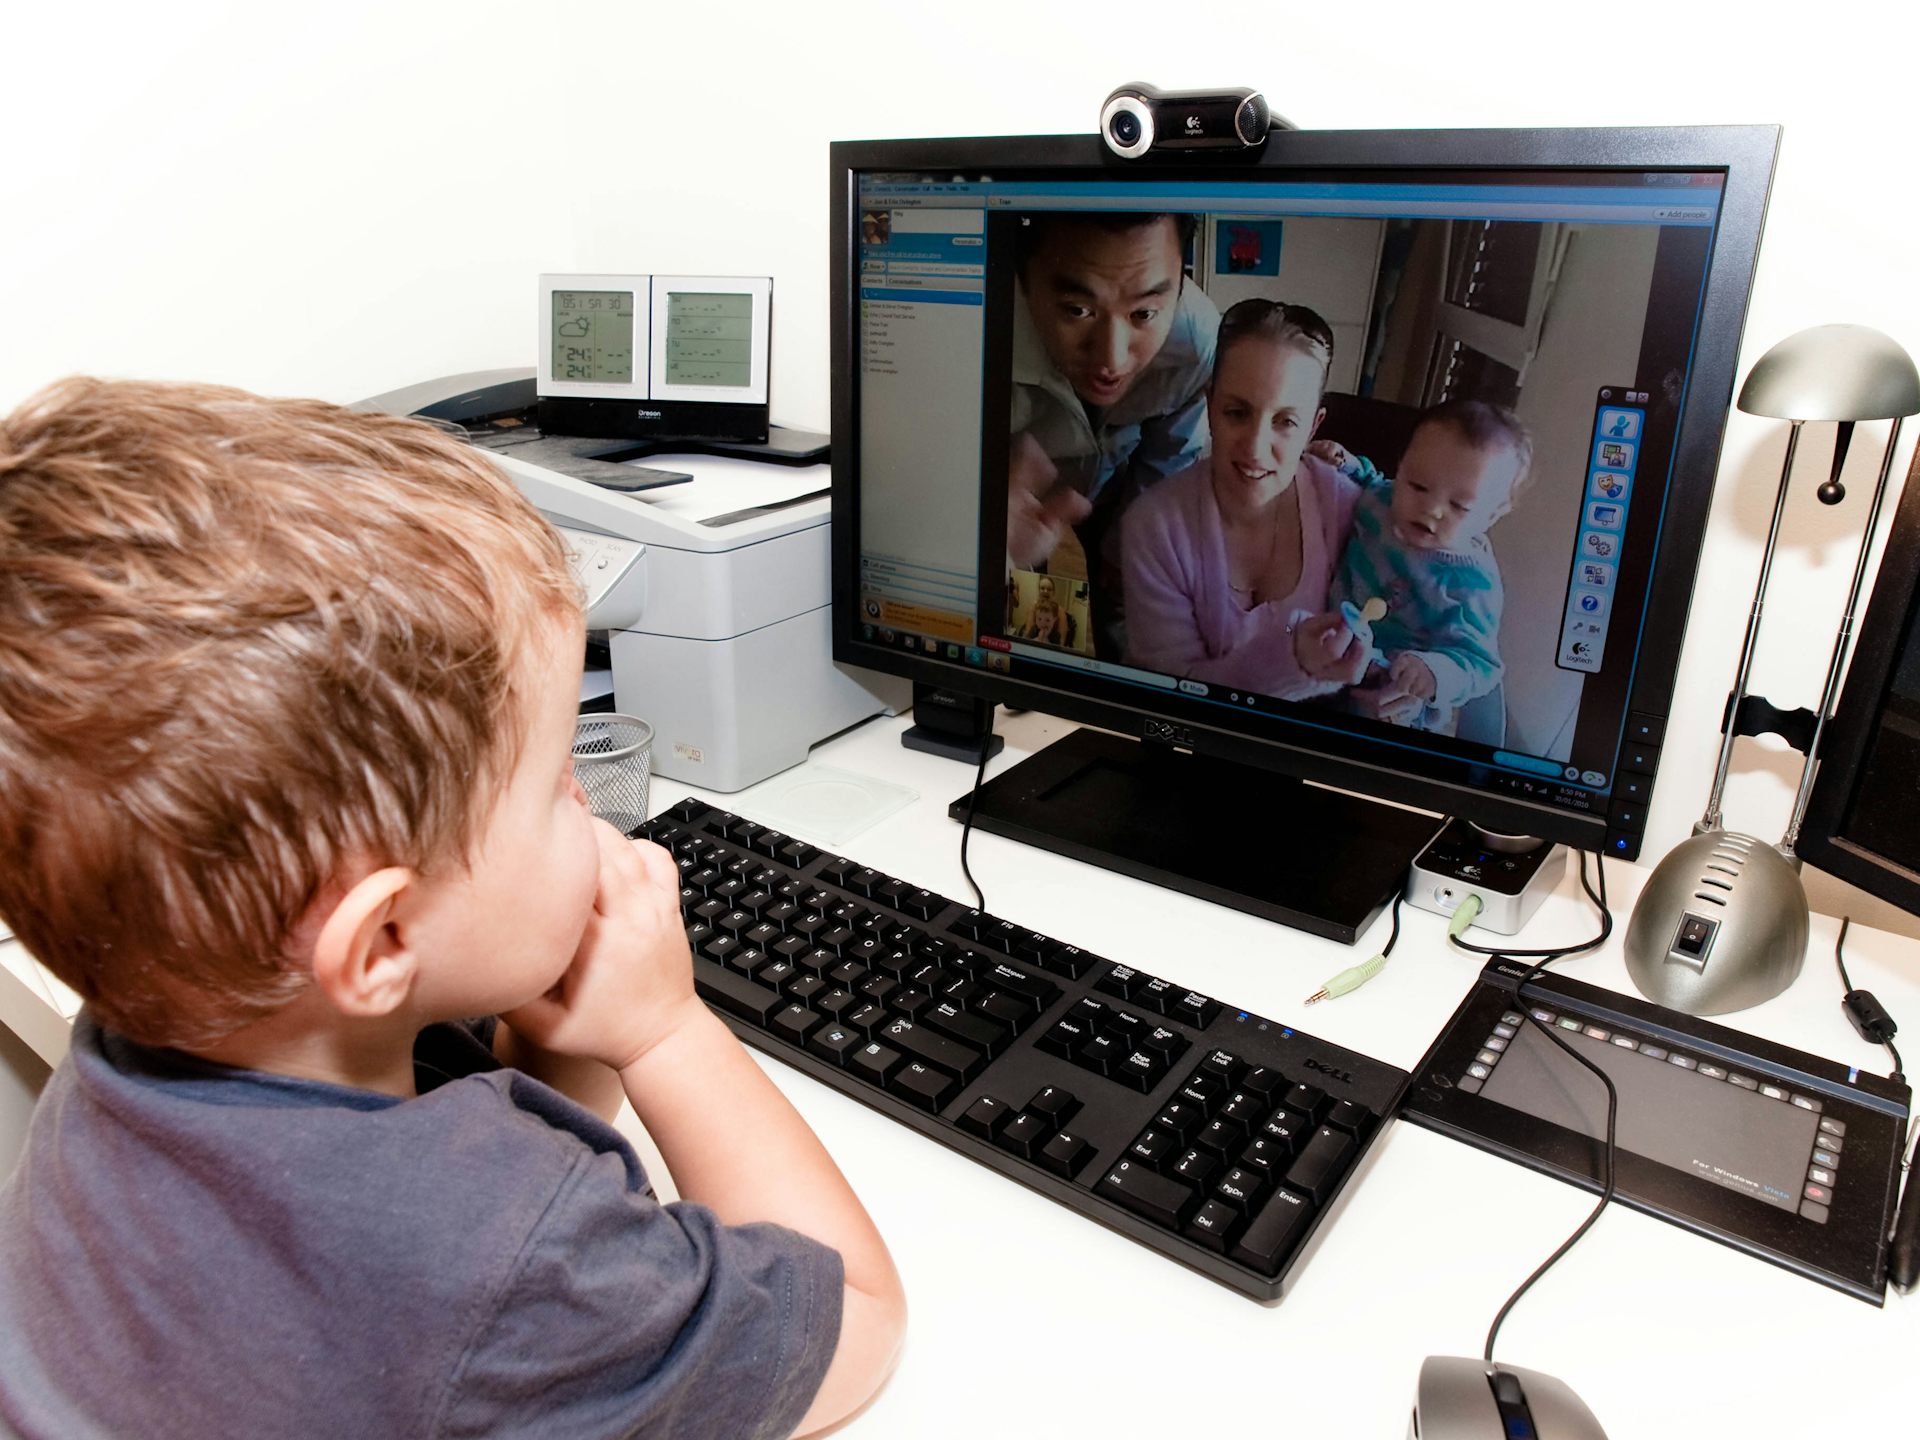 Общение по камере живую. Компьютер для детей. Ребенок за компьютером. Общение с компьютером. Компьютер картинка для детей.